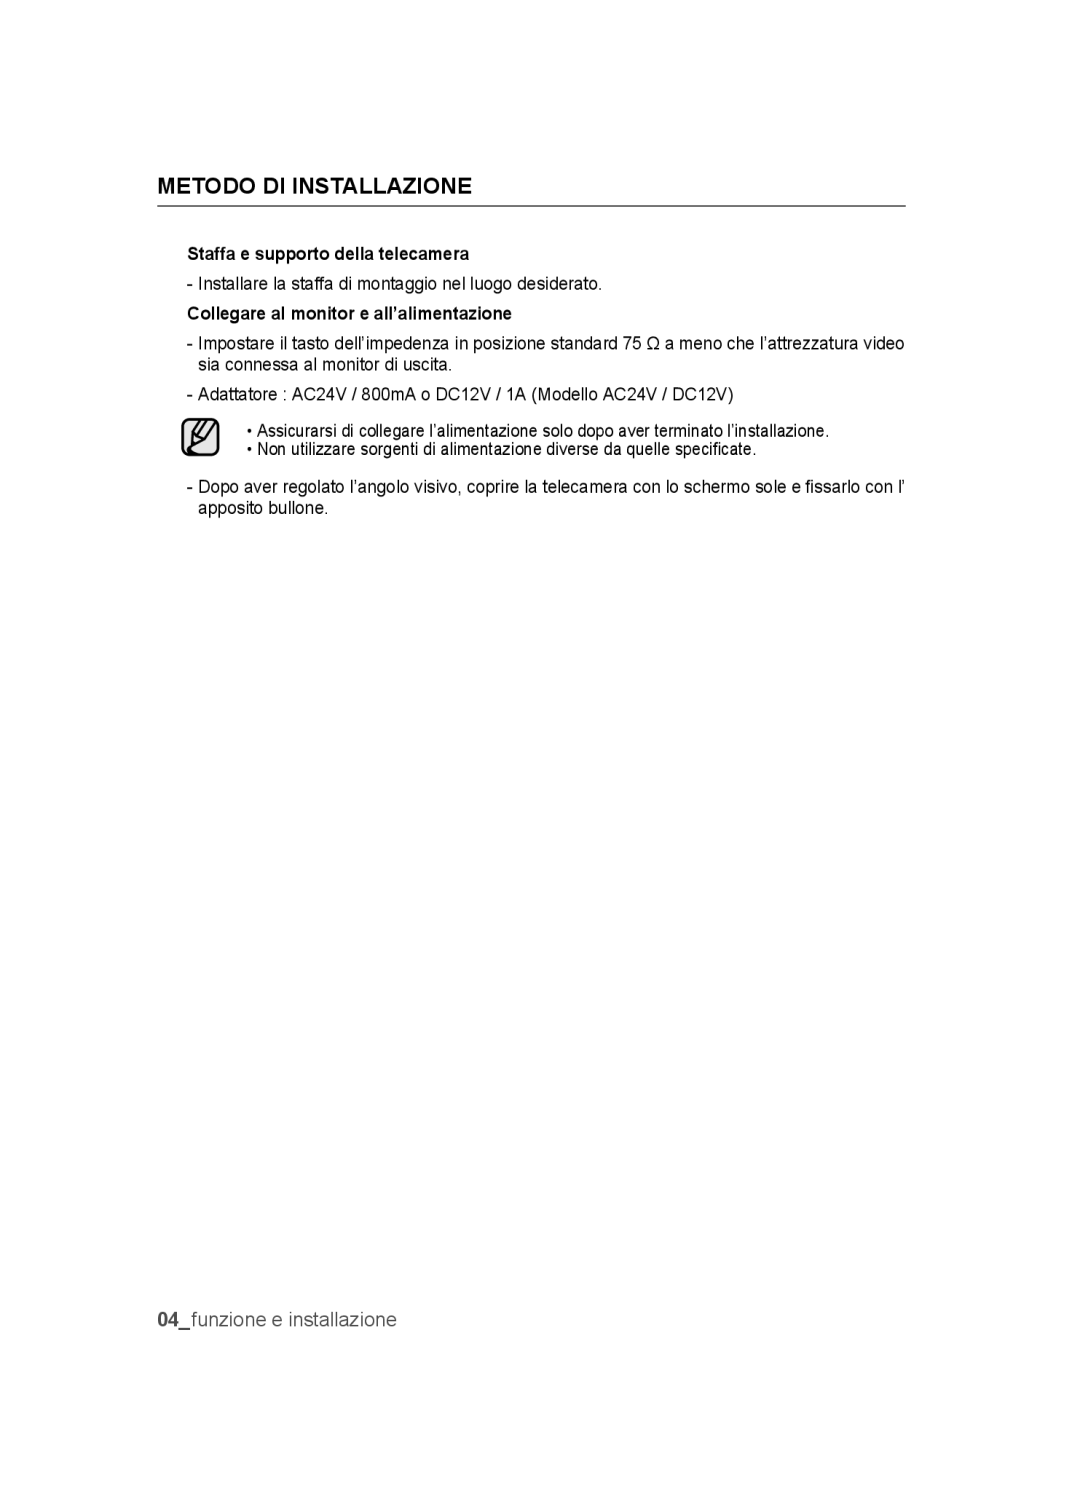 Samsung SCC-B9372P manual Metodo di installazione, funzione e installazione 